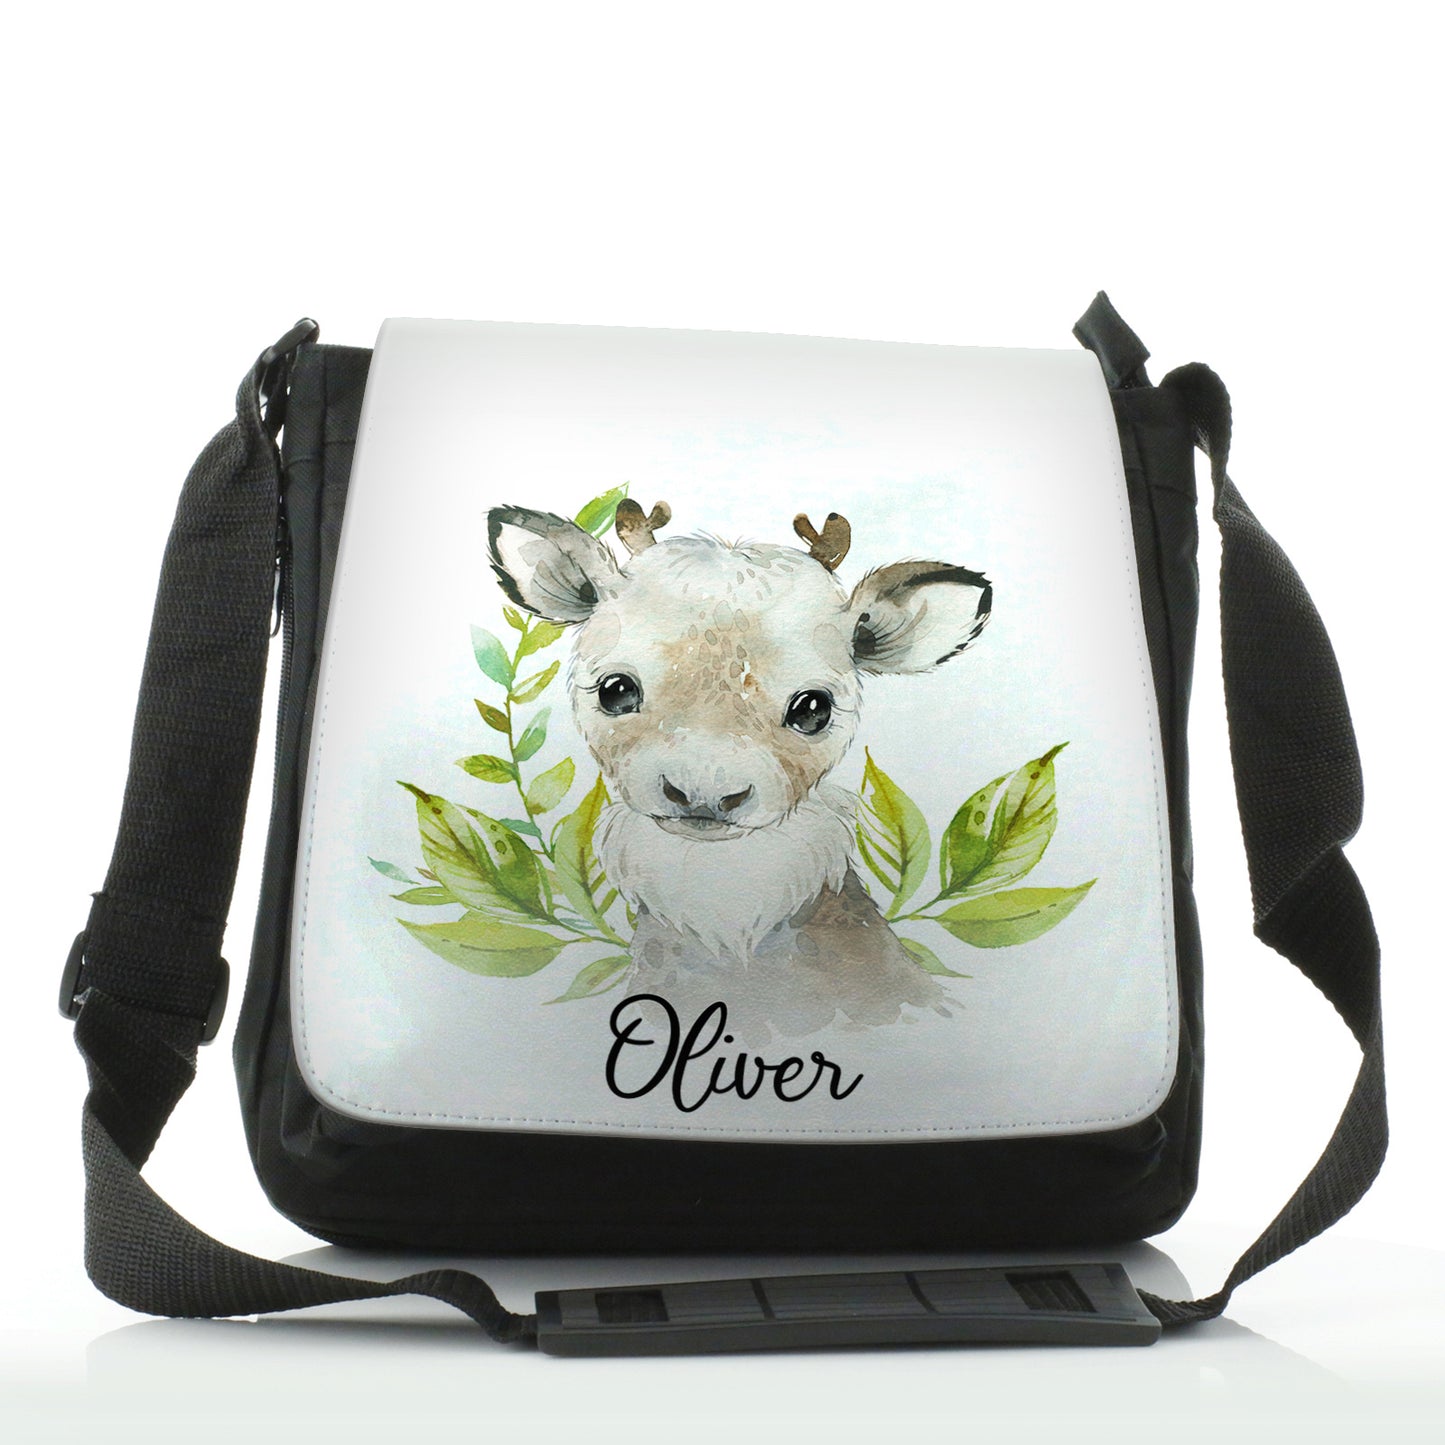 Personalised Shoulder Bag with Christmas Reindeer Deer Green Leaves and Cute Text